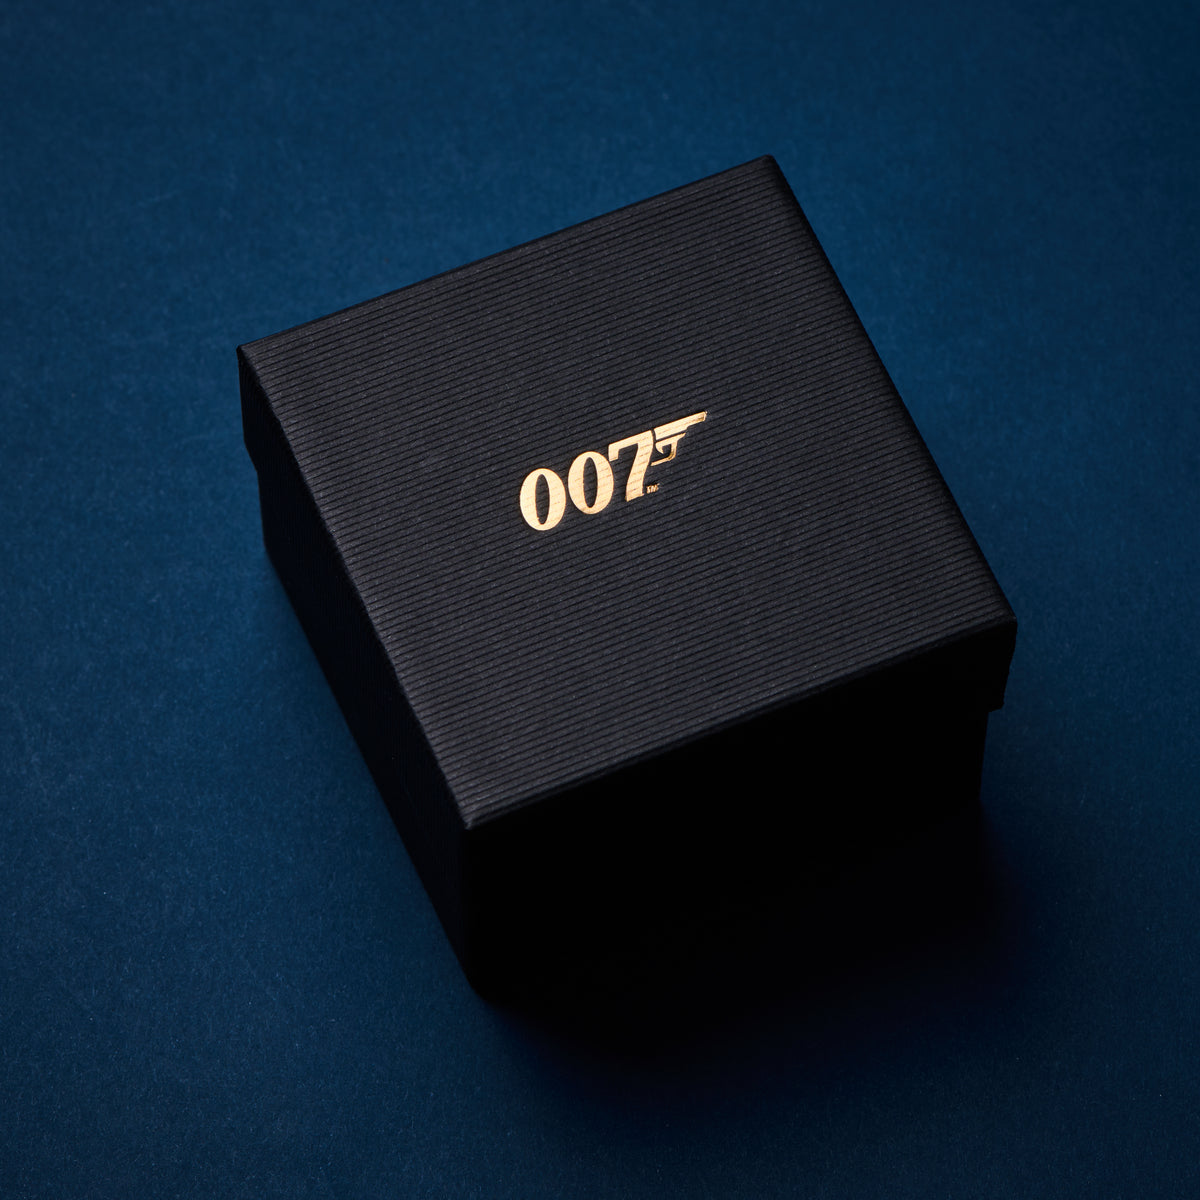 James Bond 18ct Gold Golden Gun Cufflinks